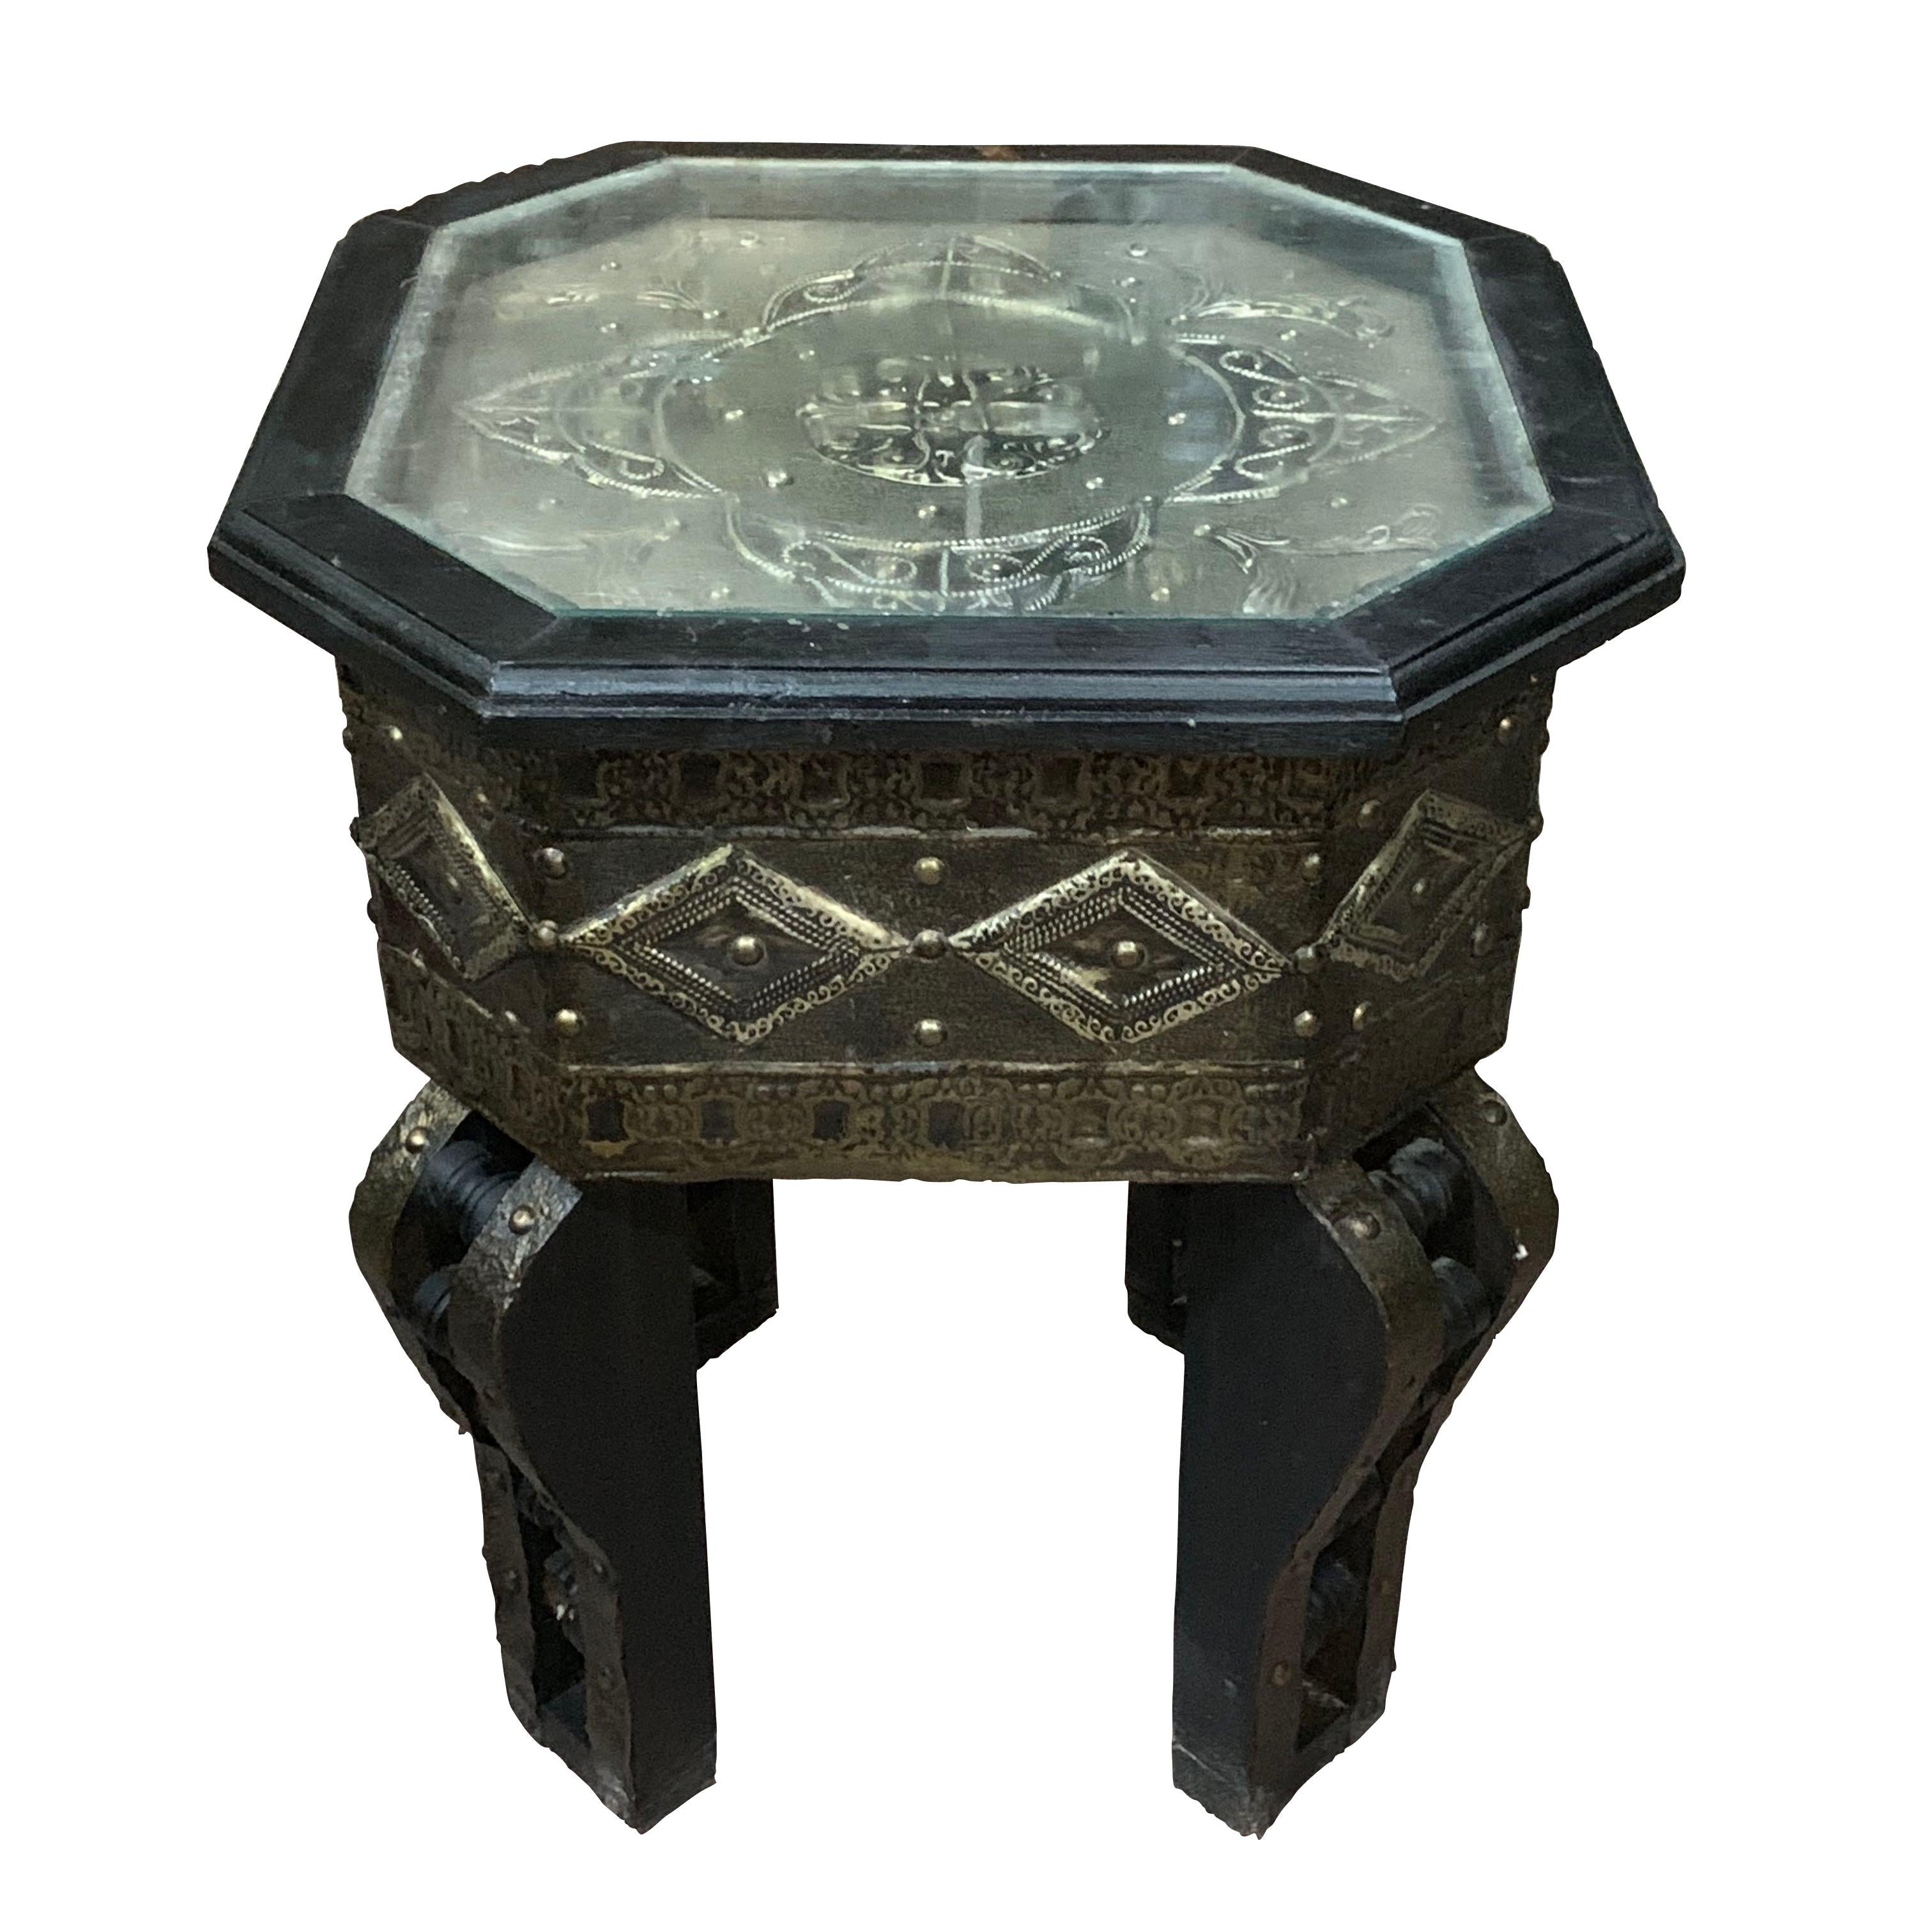 19. Jahrhundert Marokko aus der Sahara, die Platte und die Seiten dieses achteckigen Cocktailtisches aus Zedernholz haben dekorative Details aus Messing und Silbereinlagen. 
Die dekorative Platte ist durch Glas geschützt.

